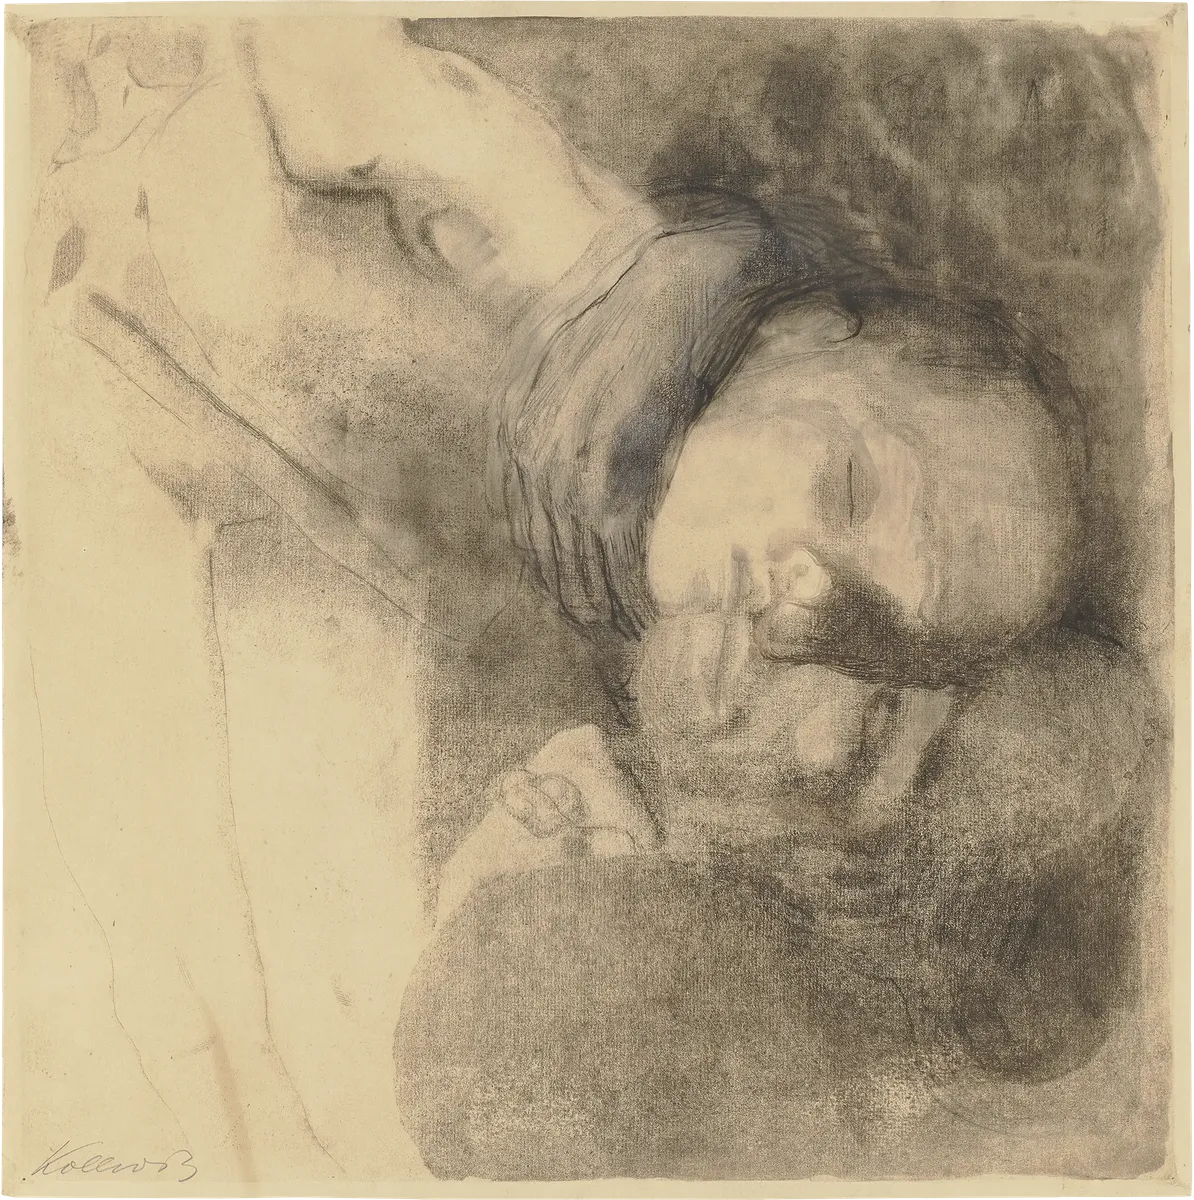 Käthe Kollwitz, Death, Woman and Child, 1910